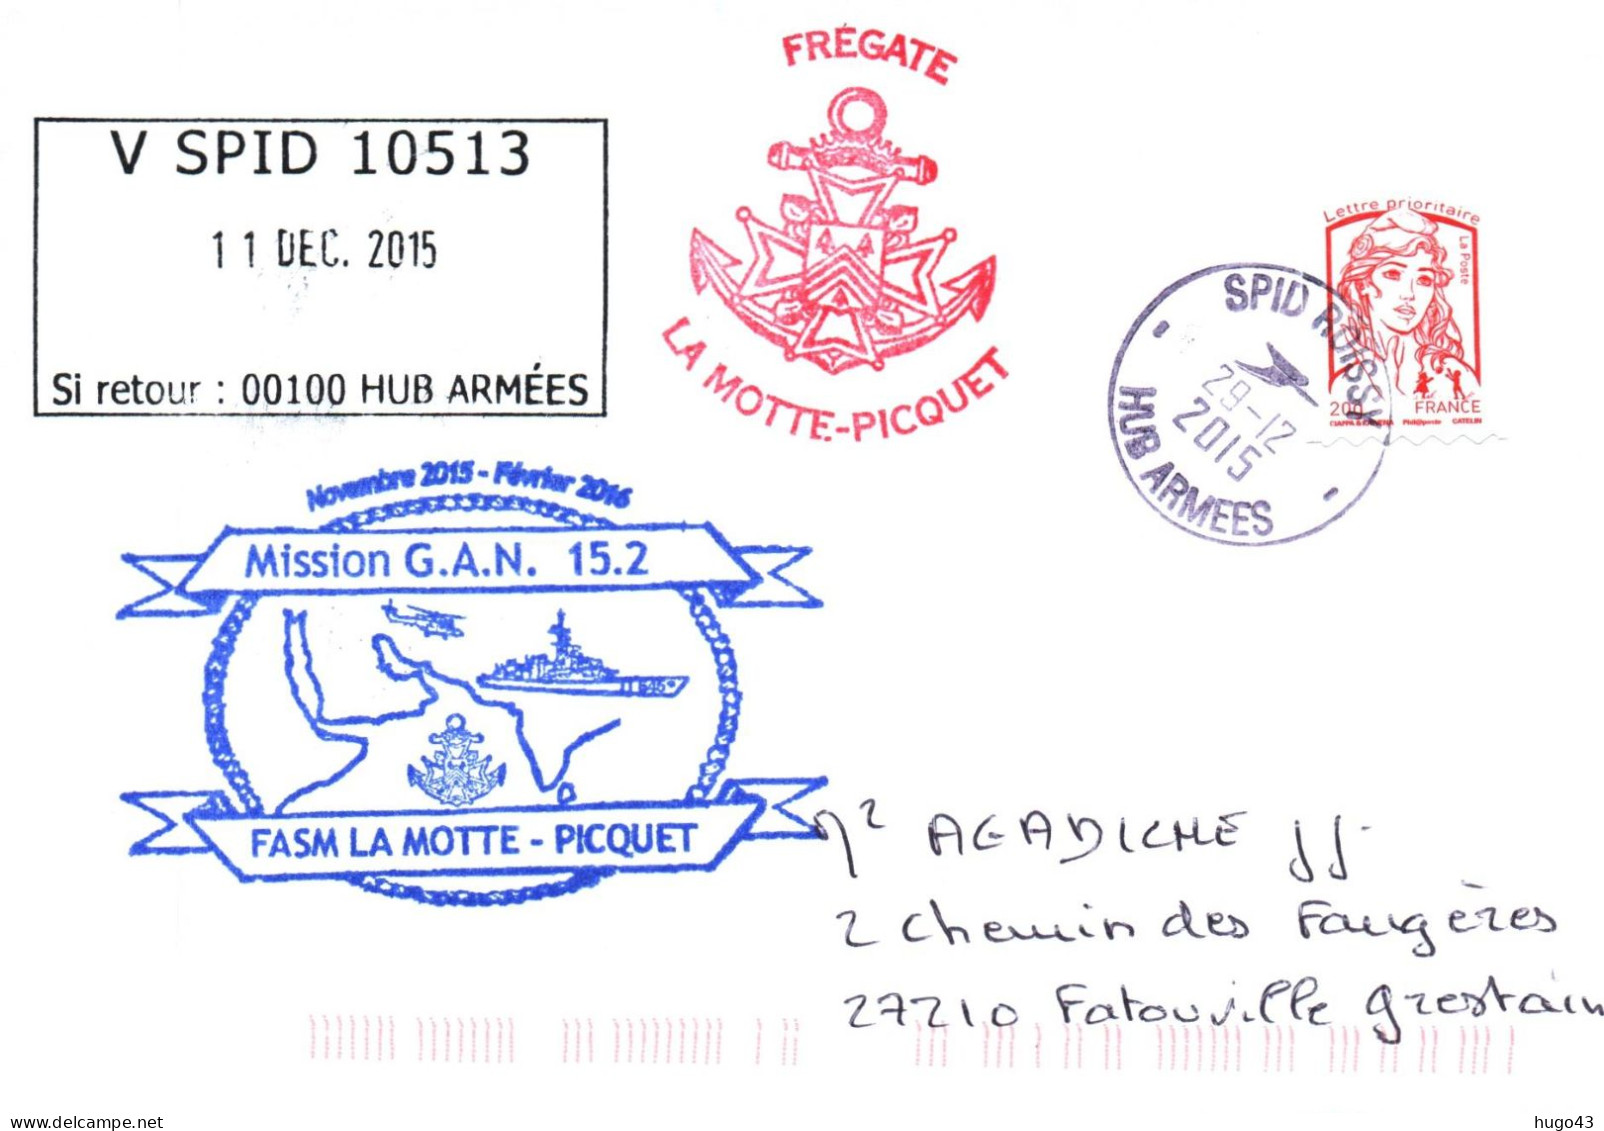 ENVELOPPE AVEC CACHET FREGATE LA MOTTE PICQUET - MISSION G.A.N. 15.2 - SPID ROISSY LE 29 DECEMBRE 2015 - Poste Navale